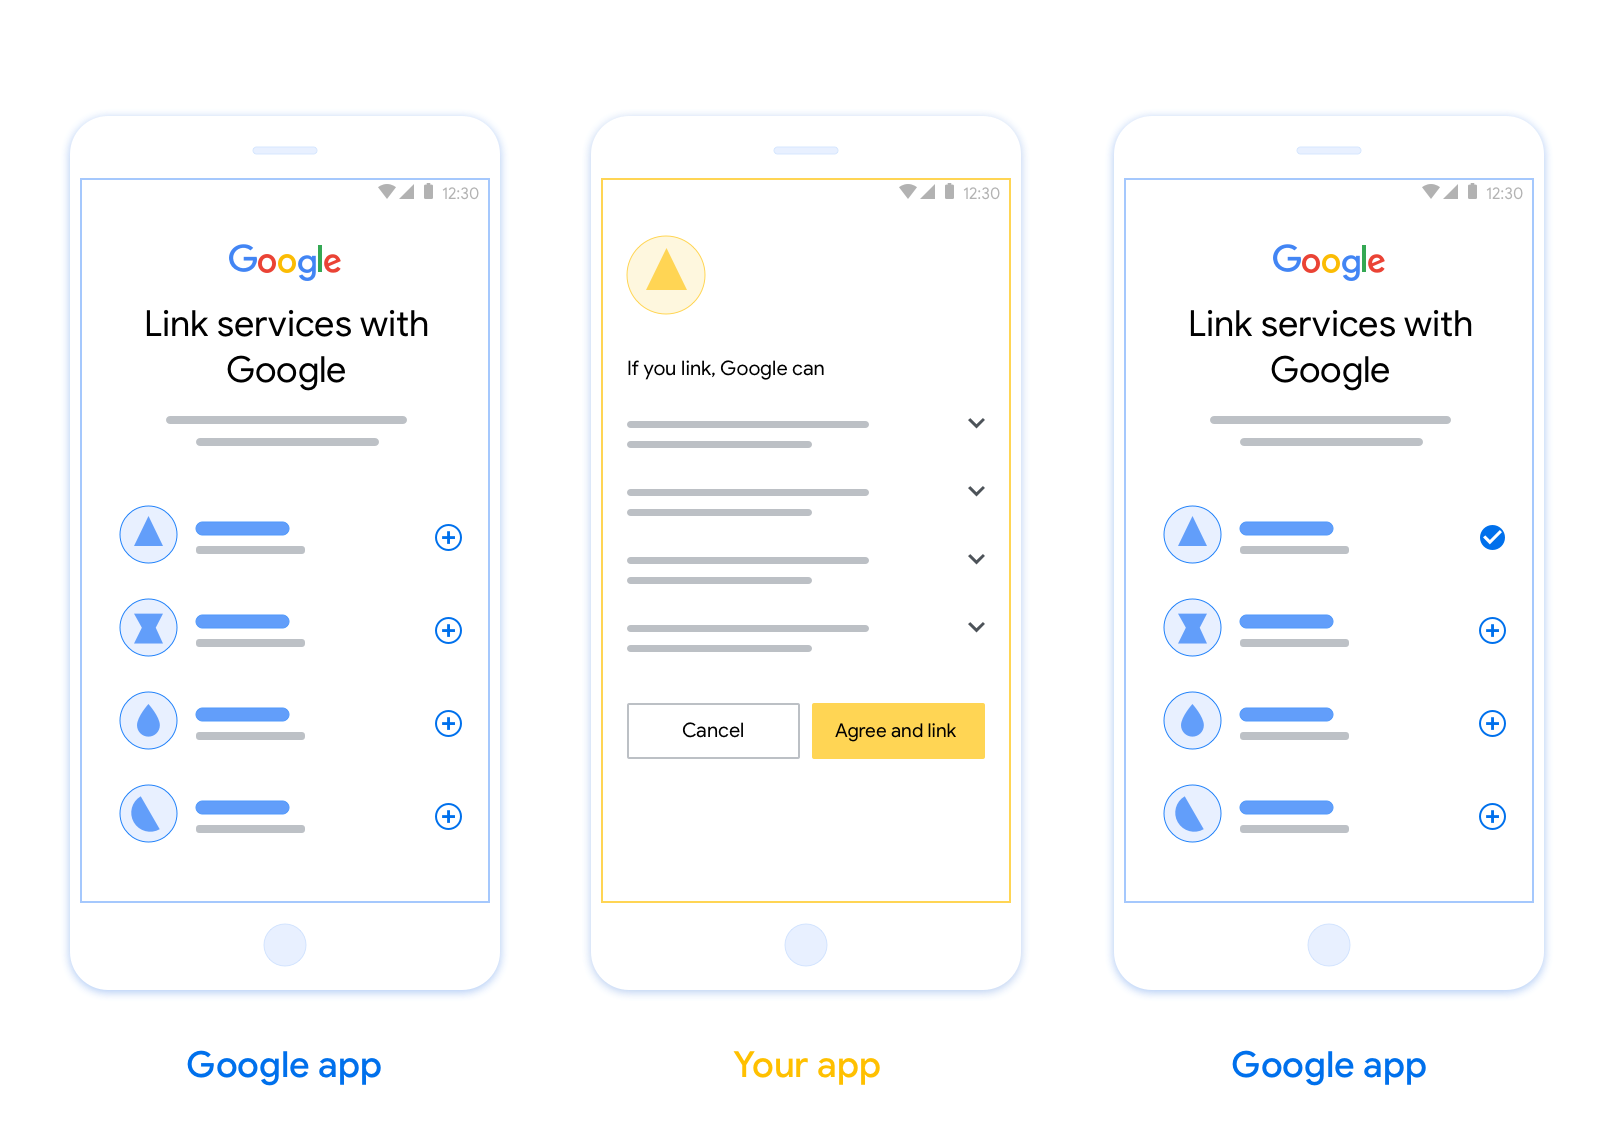 이 그림은 사용자가 Google 계정을 인증 시스템에 연결하는 단계를 보여줍니다. 첫 번째 스크린샷은 Google 계정이 앱에 연결된 경우 사용자가 앱을 선택하는 방법을 보여줍니다. 두 번째 스크린샷은 Google 계정을 앱과 연결하기 위한 확인을 보여줍니다. 세 번째 스크린샷은 Google 앱에서 성공적으로 연결된 사용자 계정을 보여줍니다.